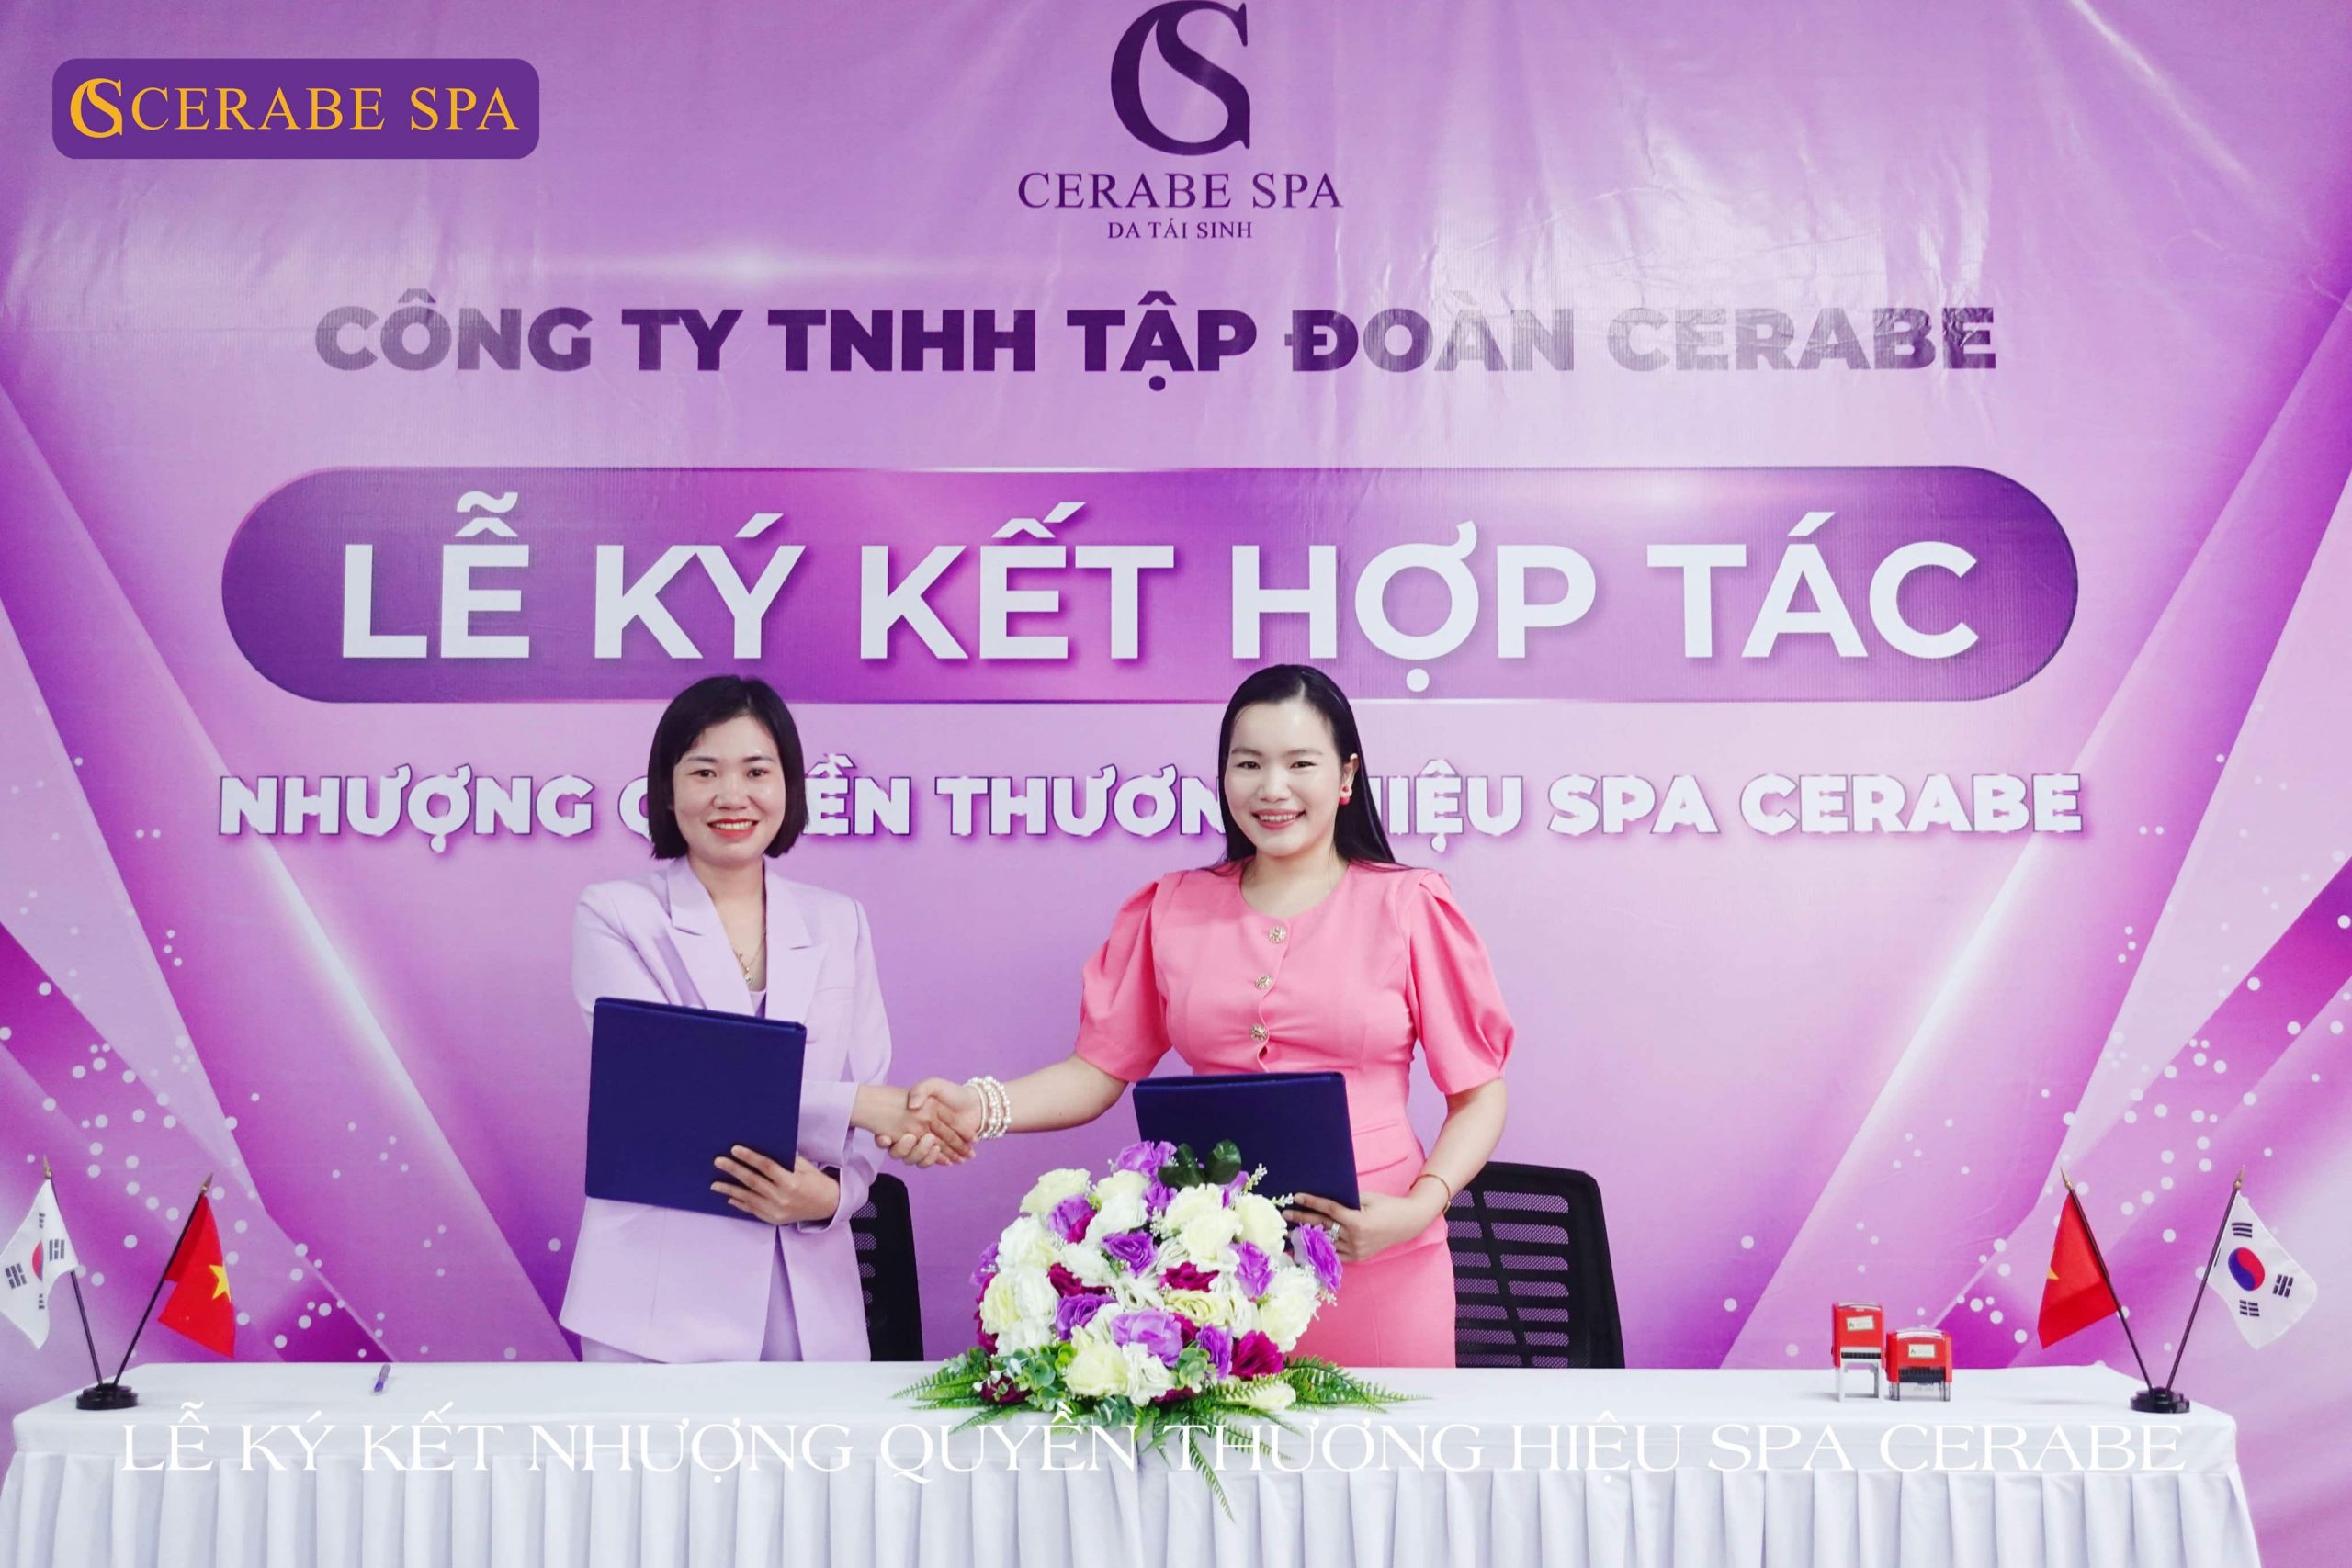 Tổng giám đốc Đặng Thị Bắc bắt tay hợp tác thành công với chuyên gia Nguyễn Thị Ly